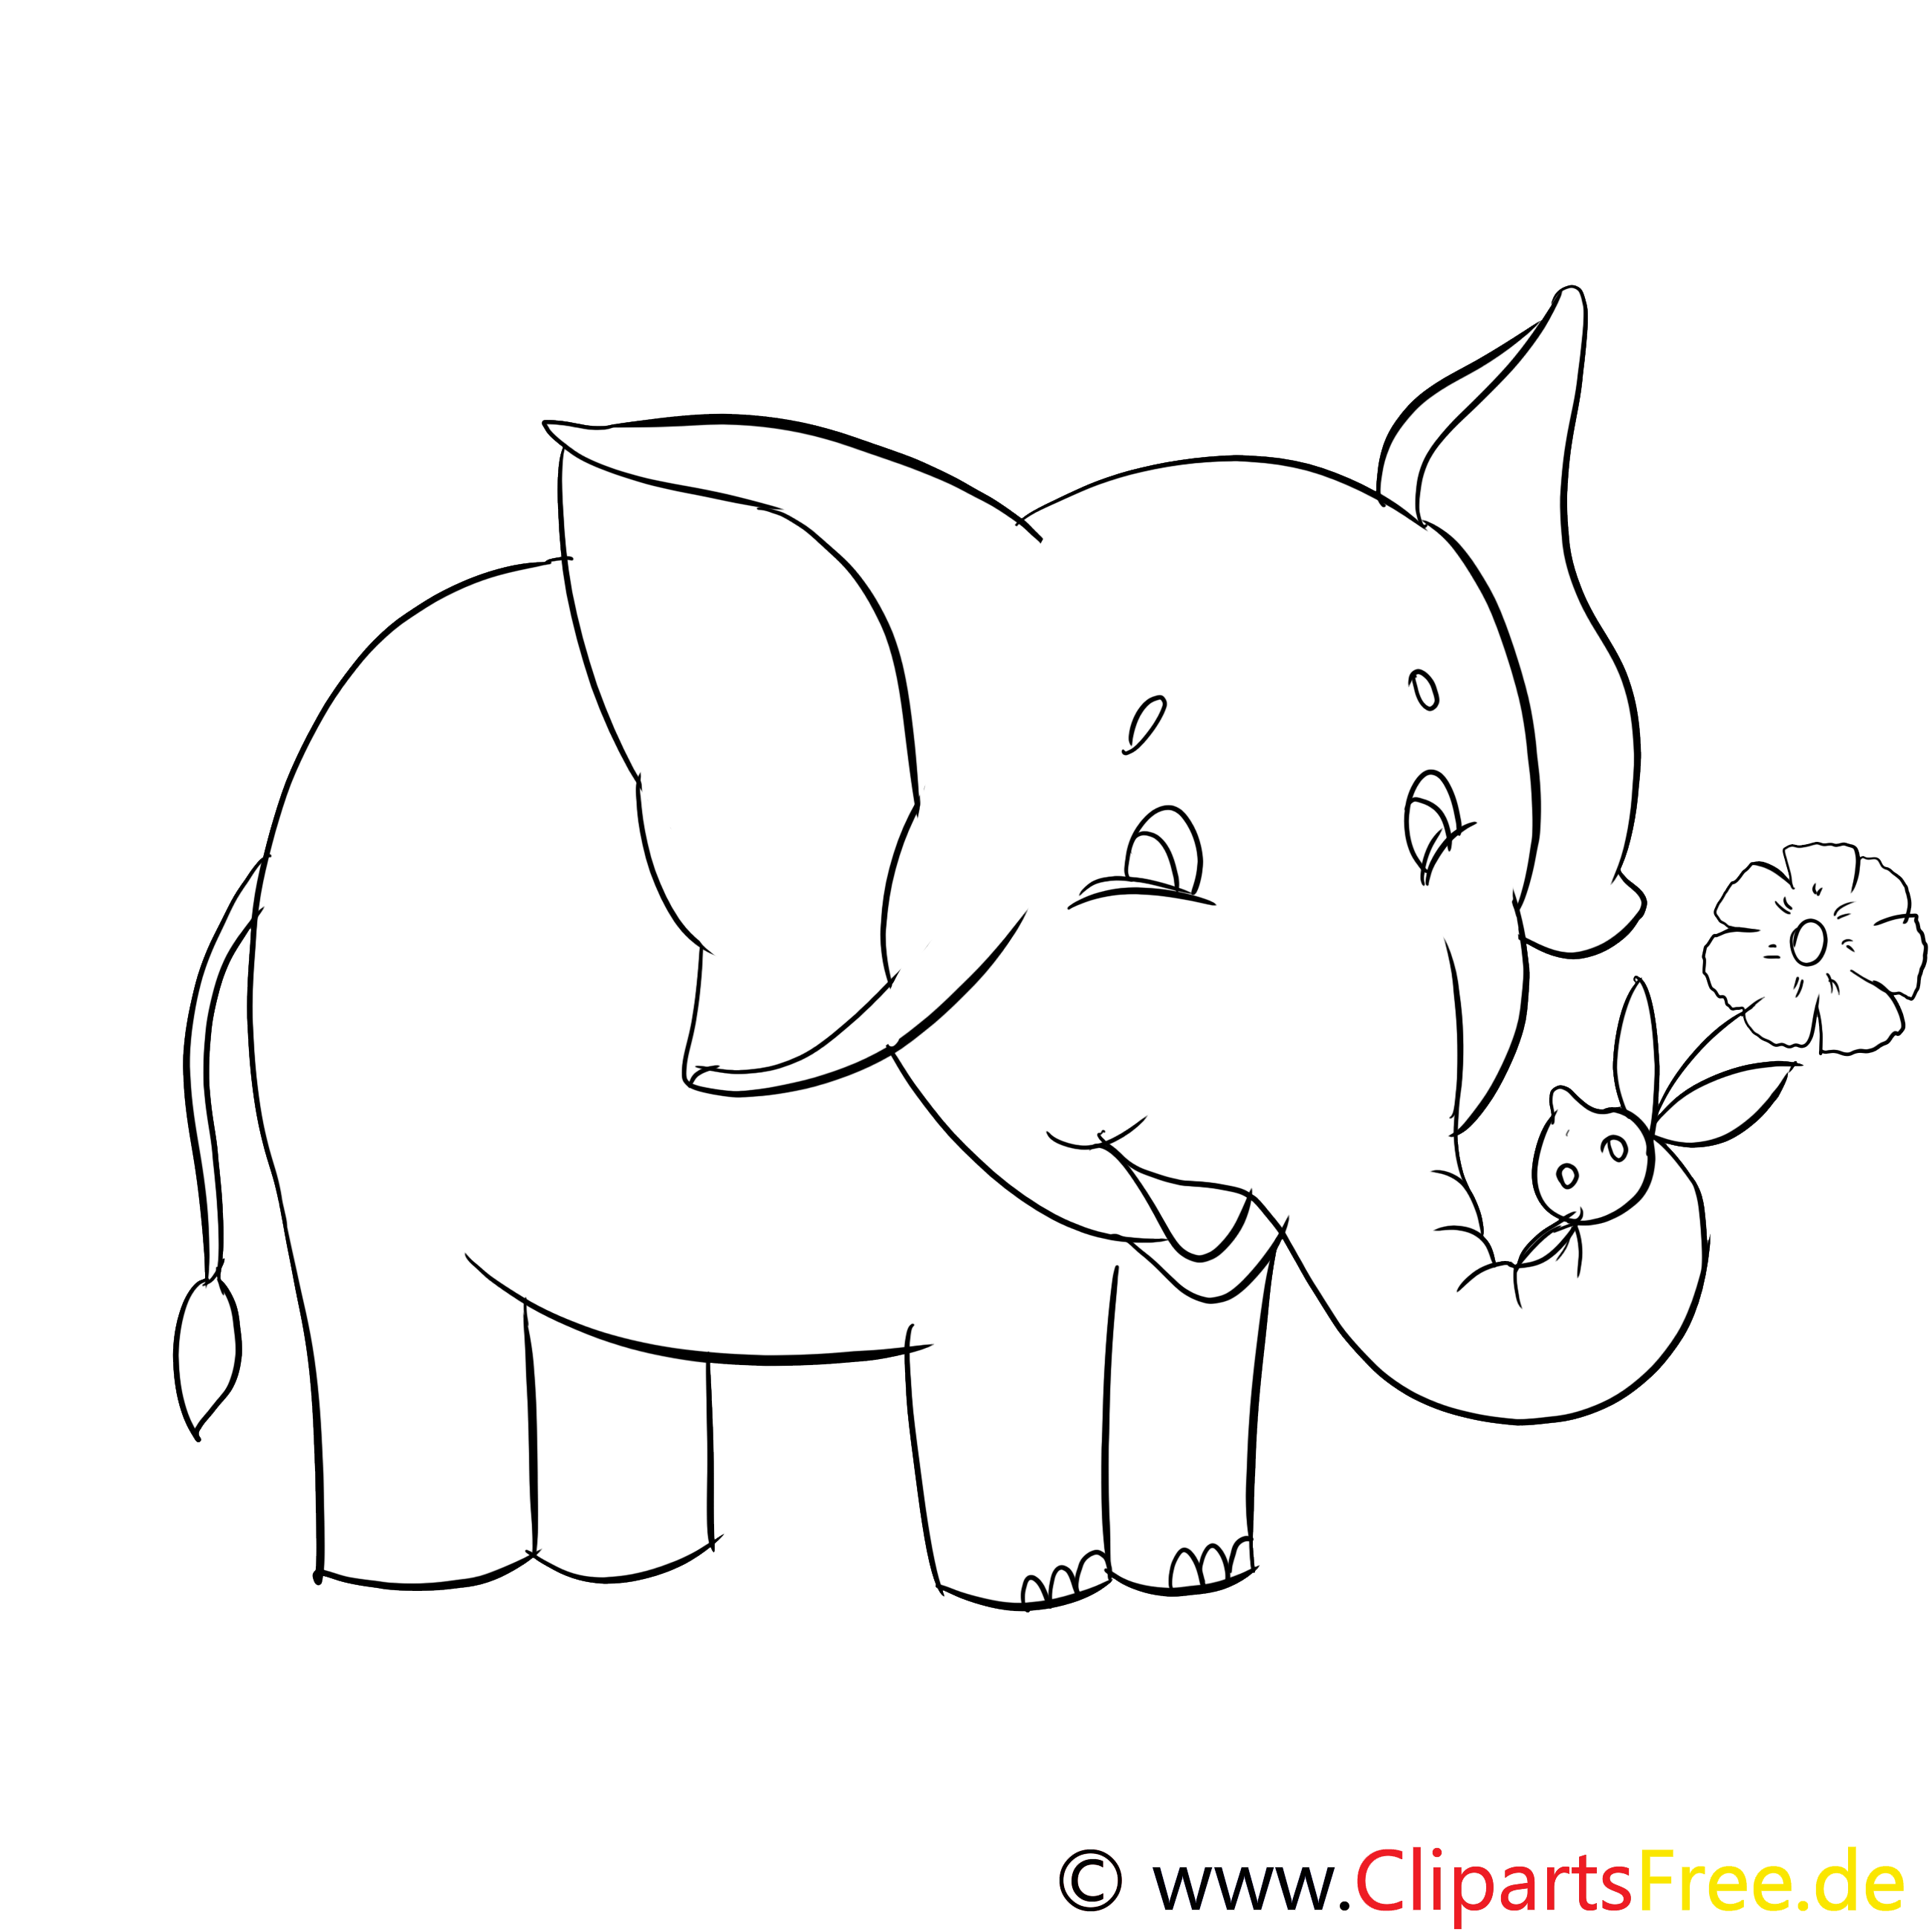 Éléphant dessins gratuits – Afrique à colorier